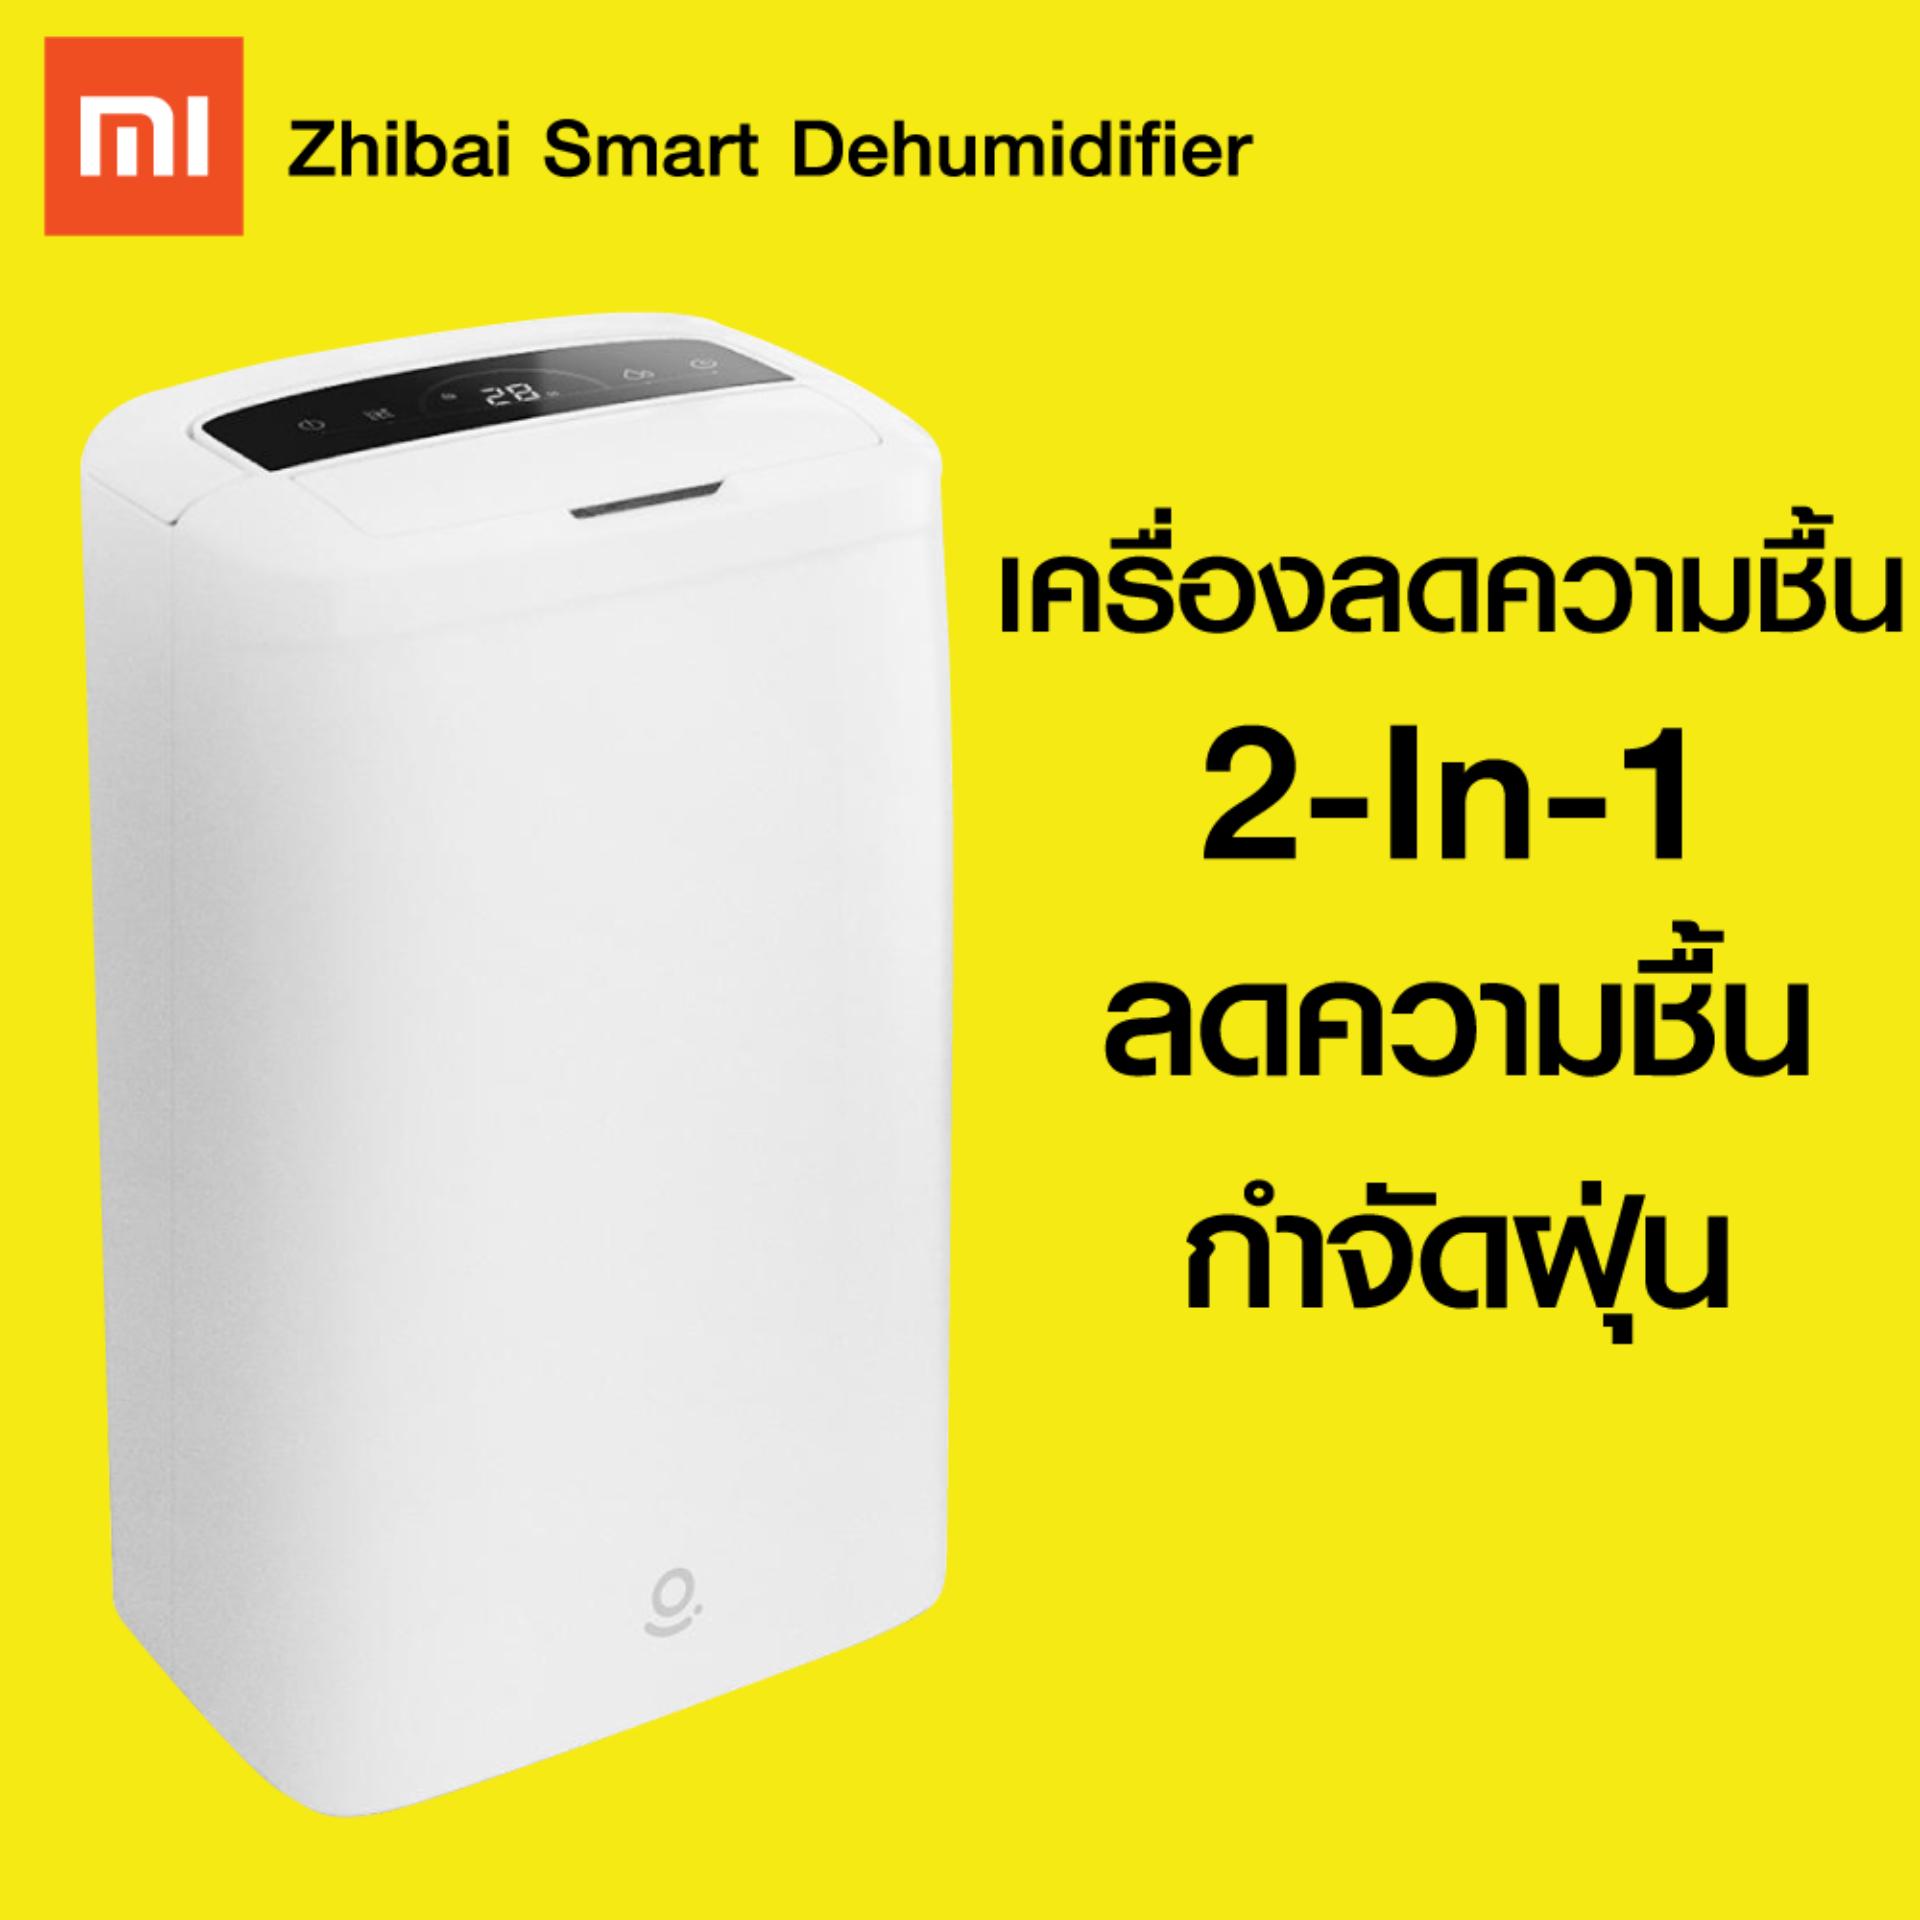 【แพ็คส่งใน 1 วัน】 Xiaomi Zhibai Smart Control Dehumidifier - เครื่องลดความชื้น Zhibai (WS1) [[ รับประกันสินค้า 30 วัน ]] / GodungIT